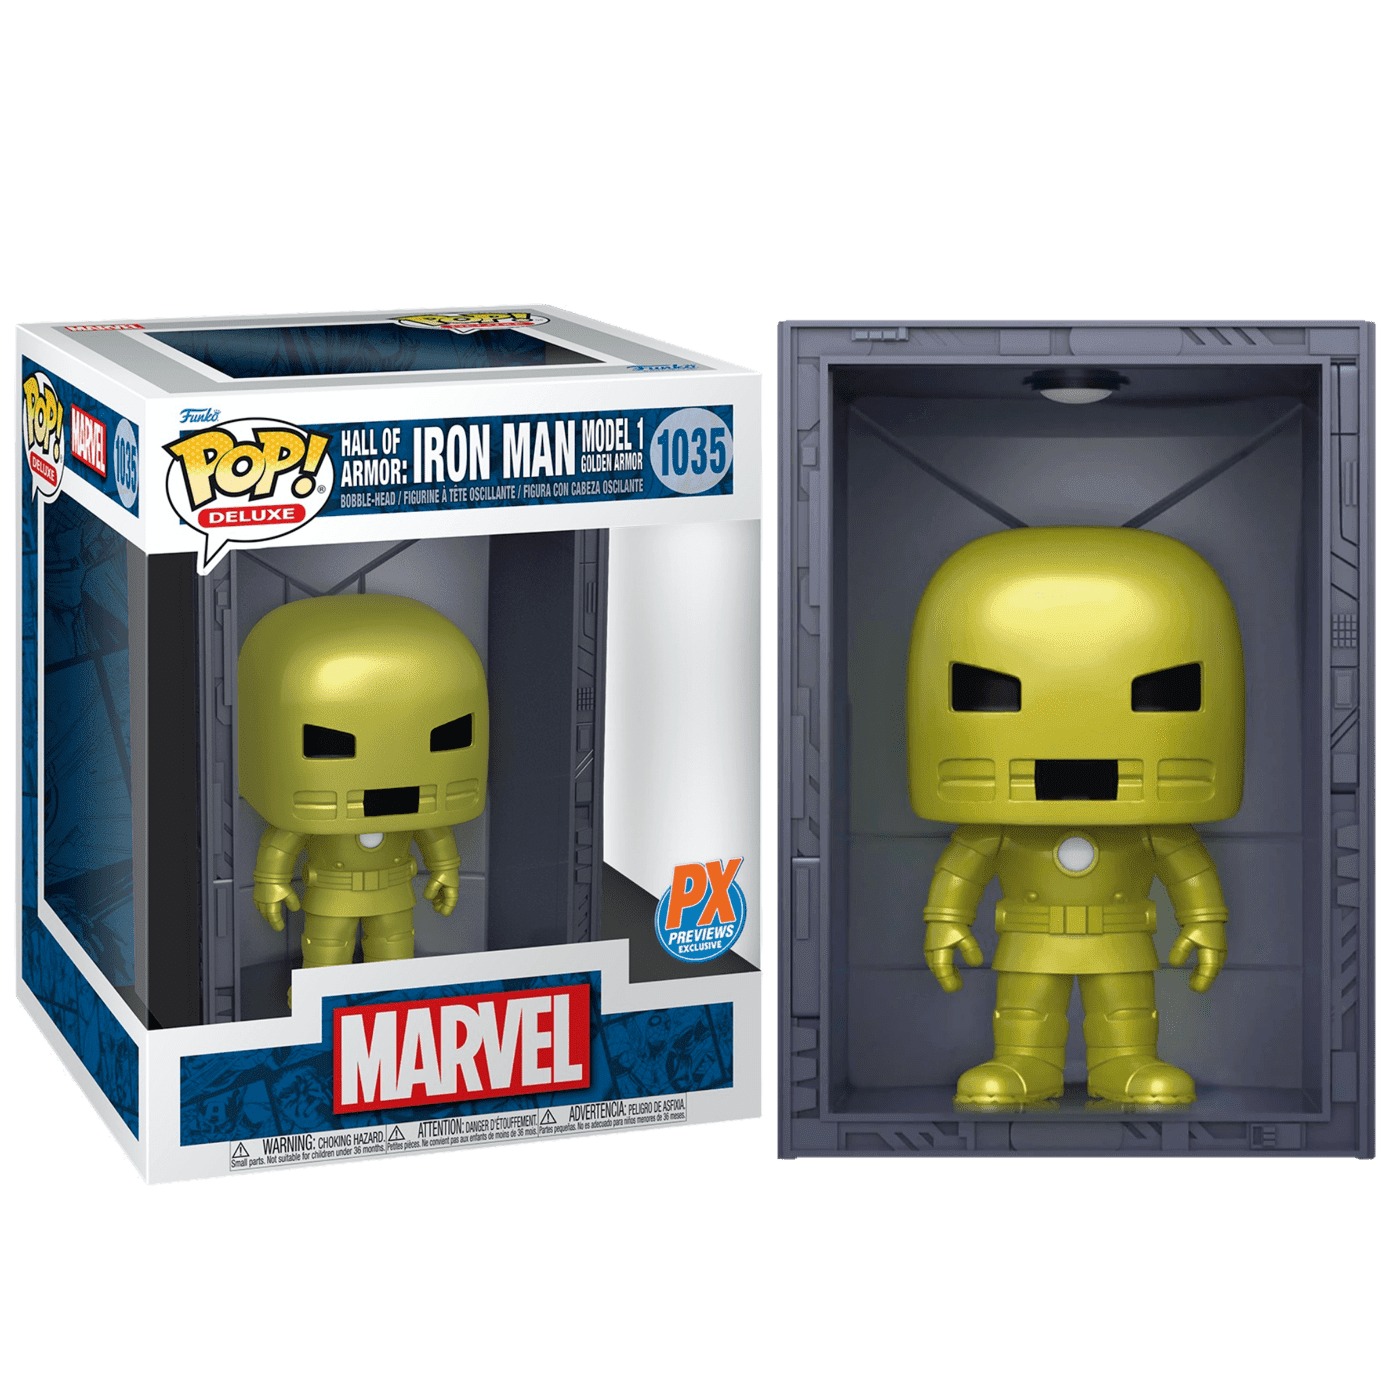 Фигурка Funko Pop! Marvel: Iron Man Hall of Armor Model 1 Deluxe Vinyl Figure железный человек фигурка iron man